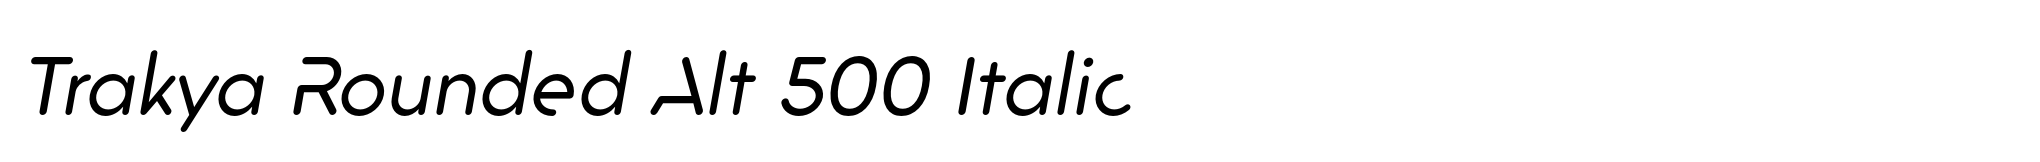 Trakya Rounded Alt 500 Italic image